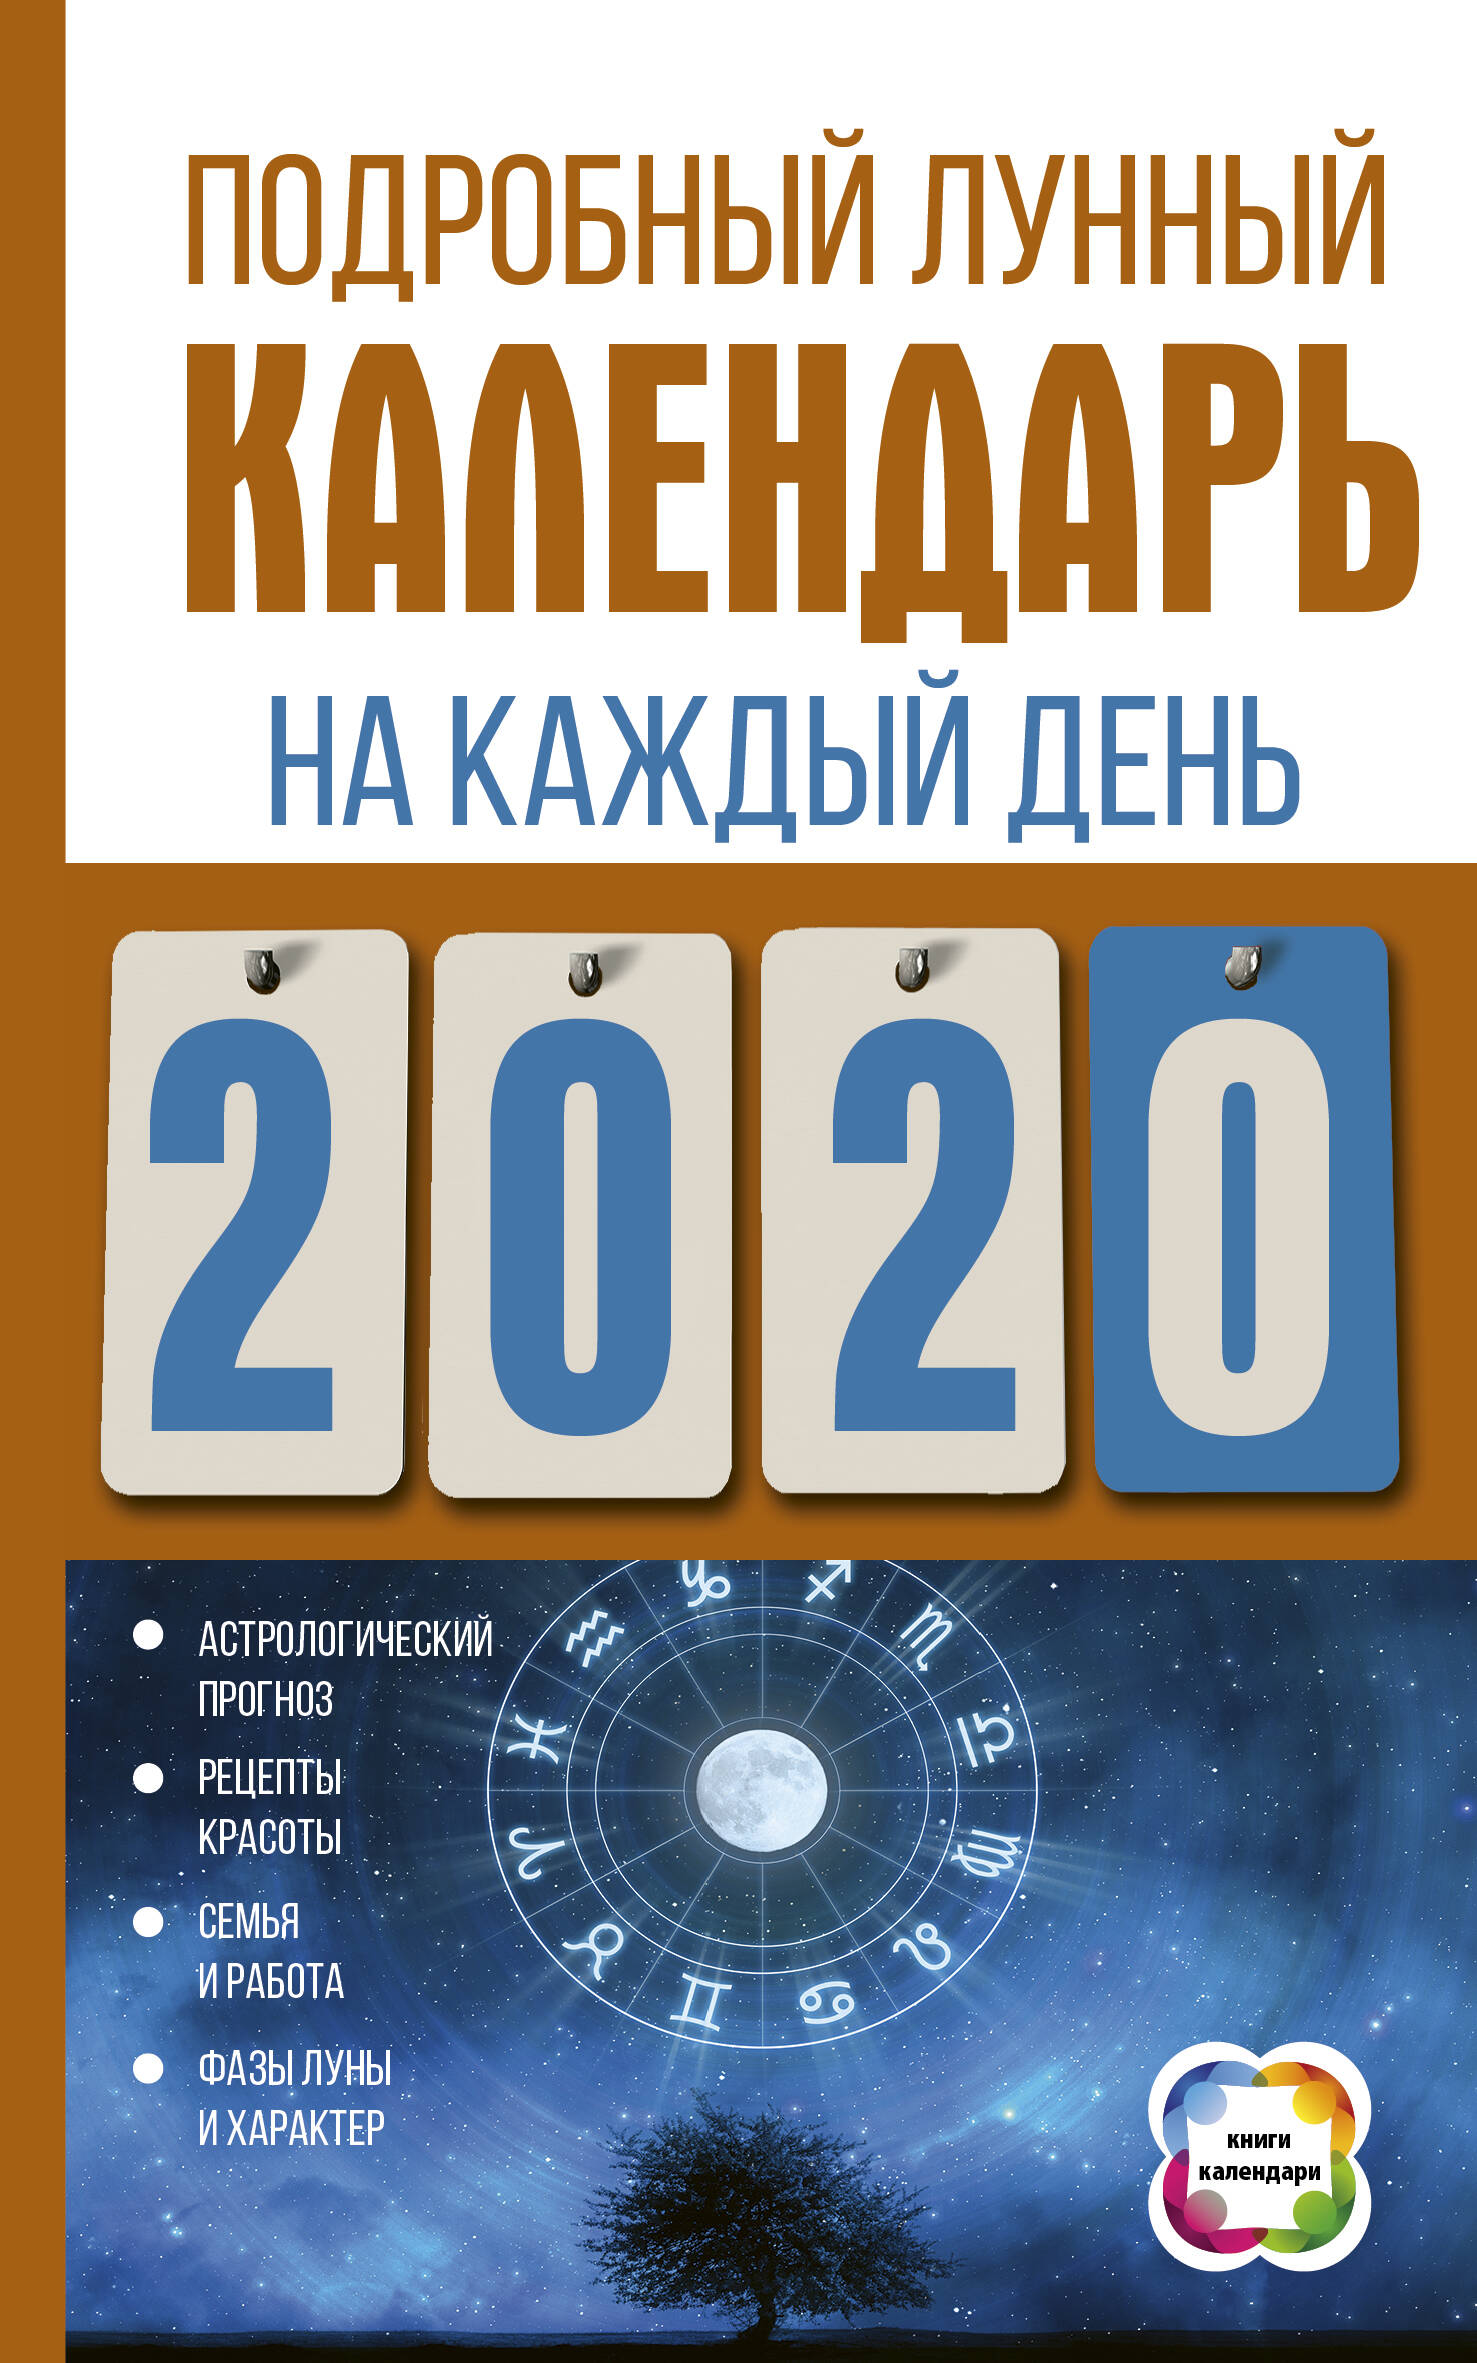 Виноградова Н. Подробный лунный календарь на каждый день 2020 года - страница 0